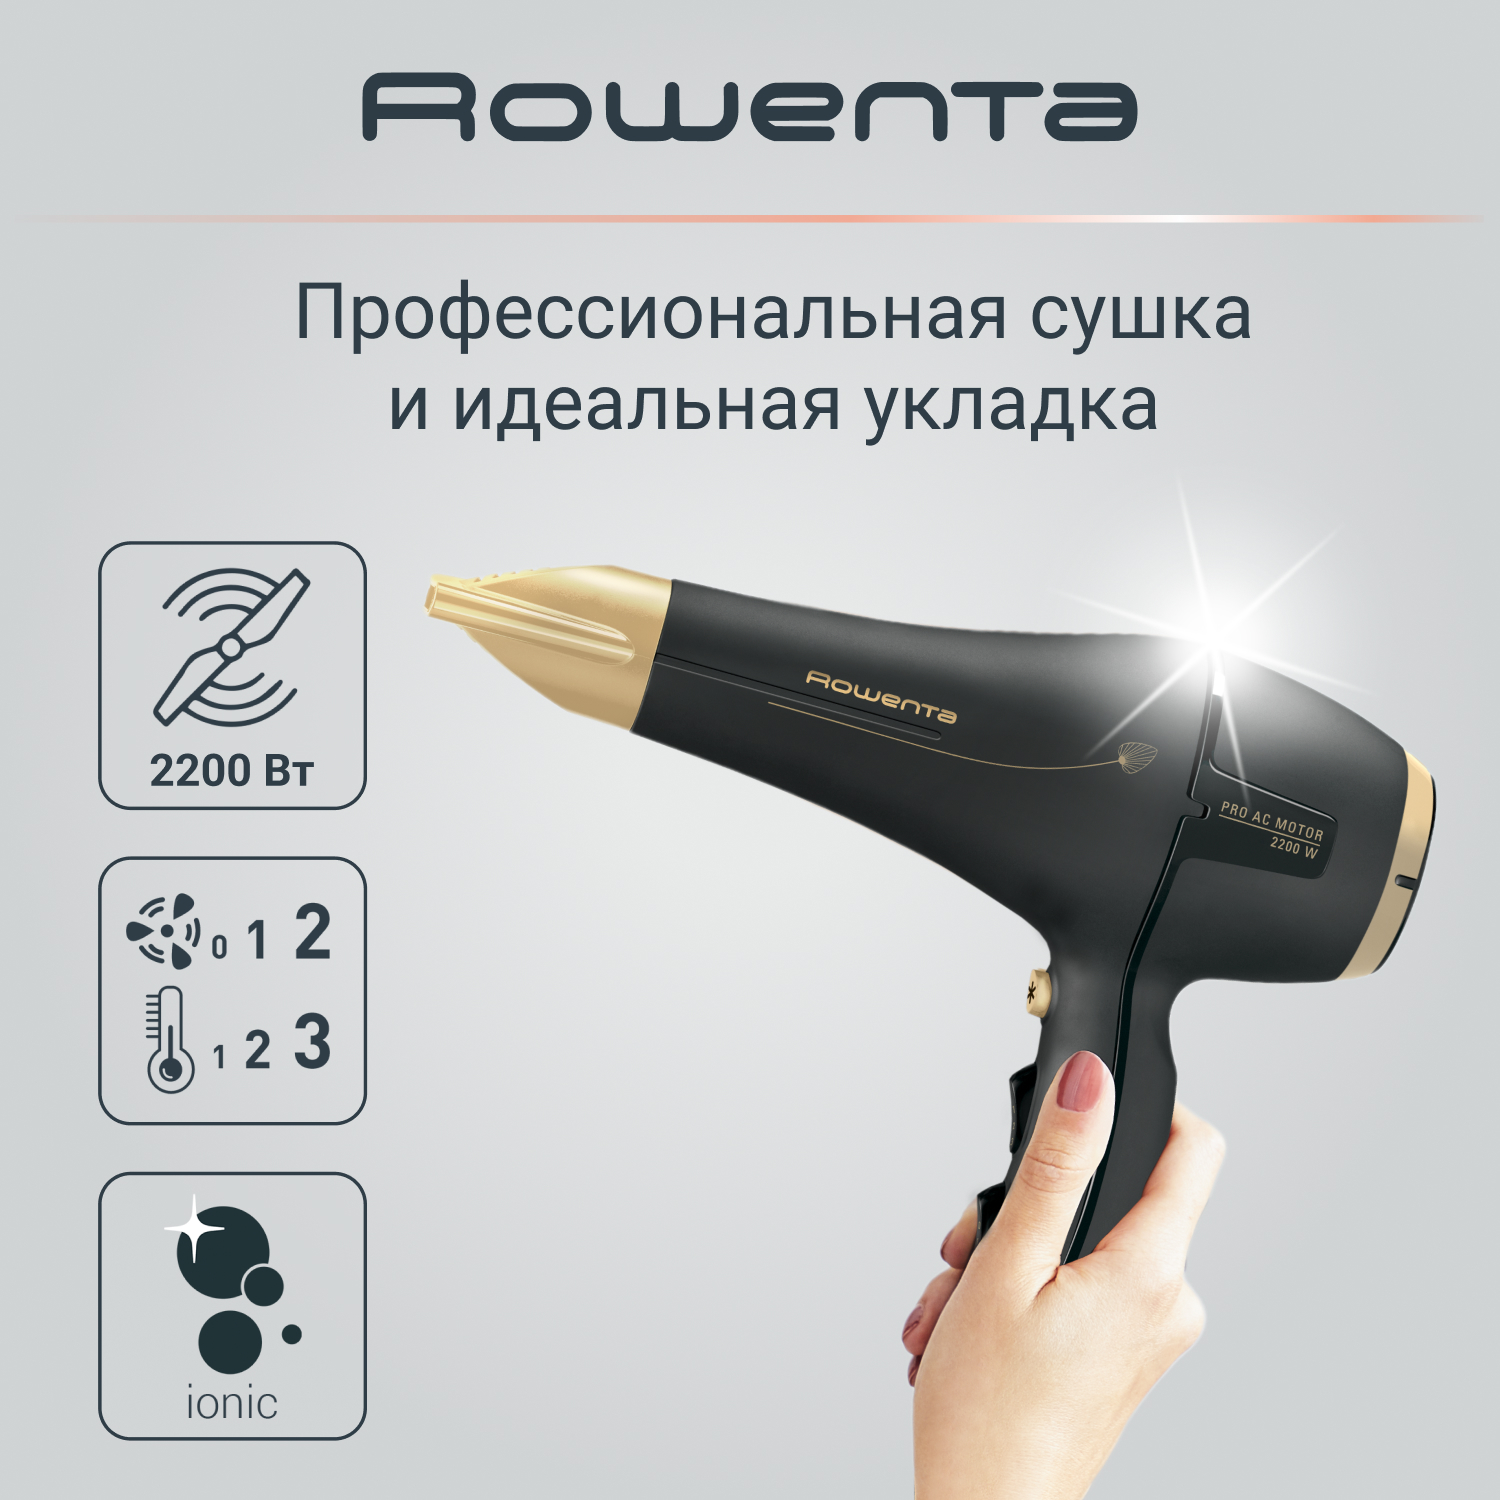 Фен Rowenta Signature Pro AC Magic Nature CV7846F0, 2200 Вт, черный/золотой